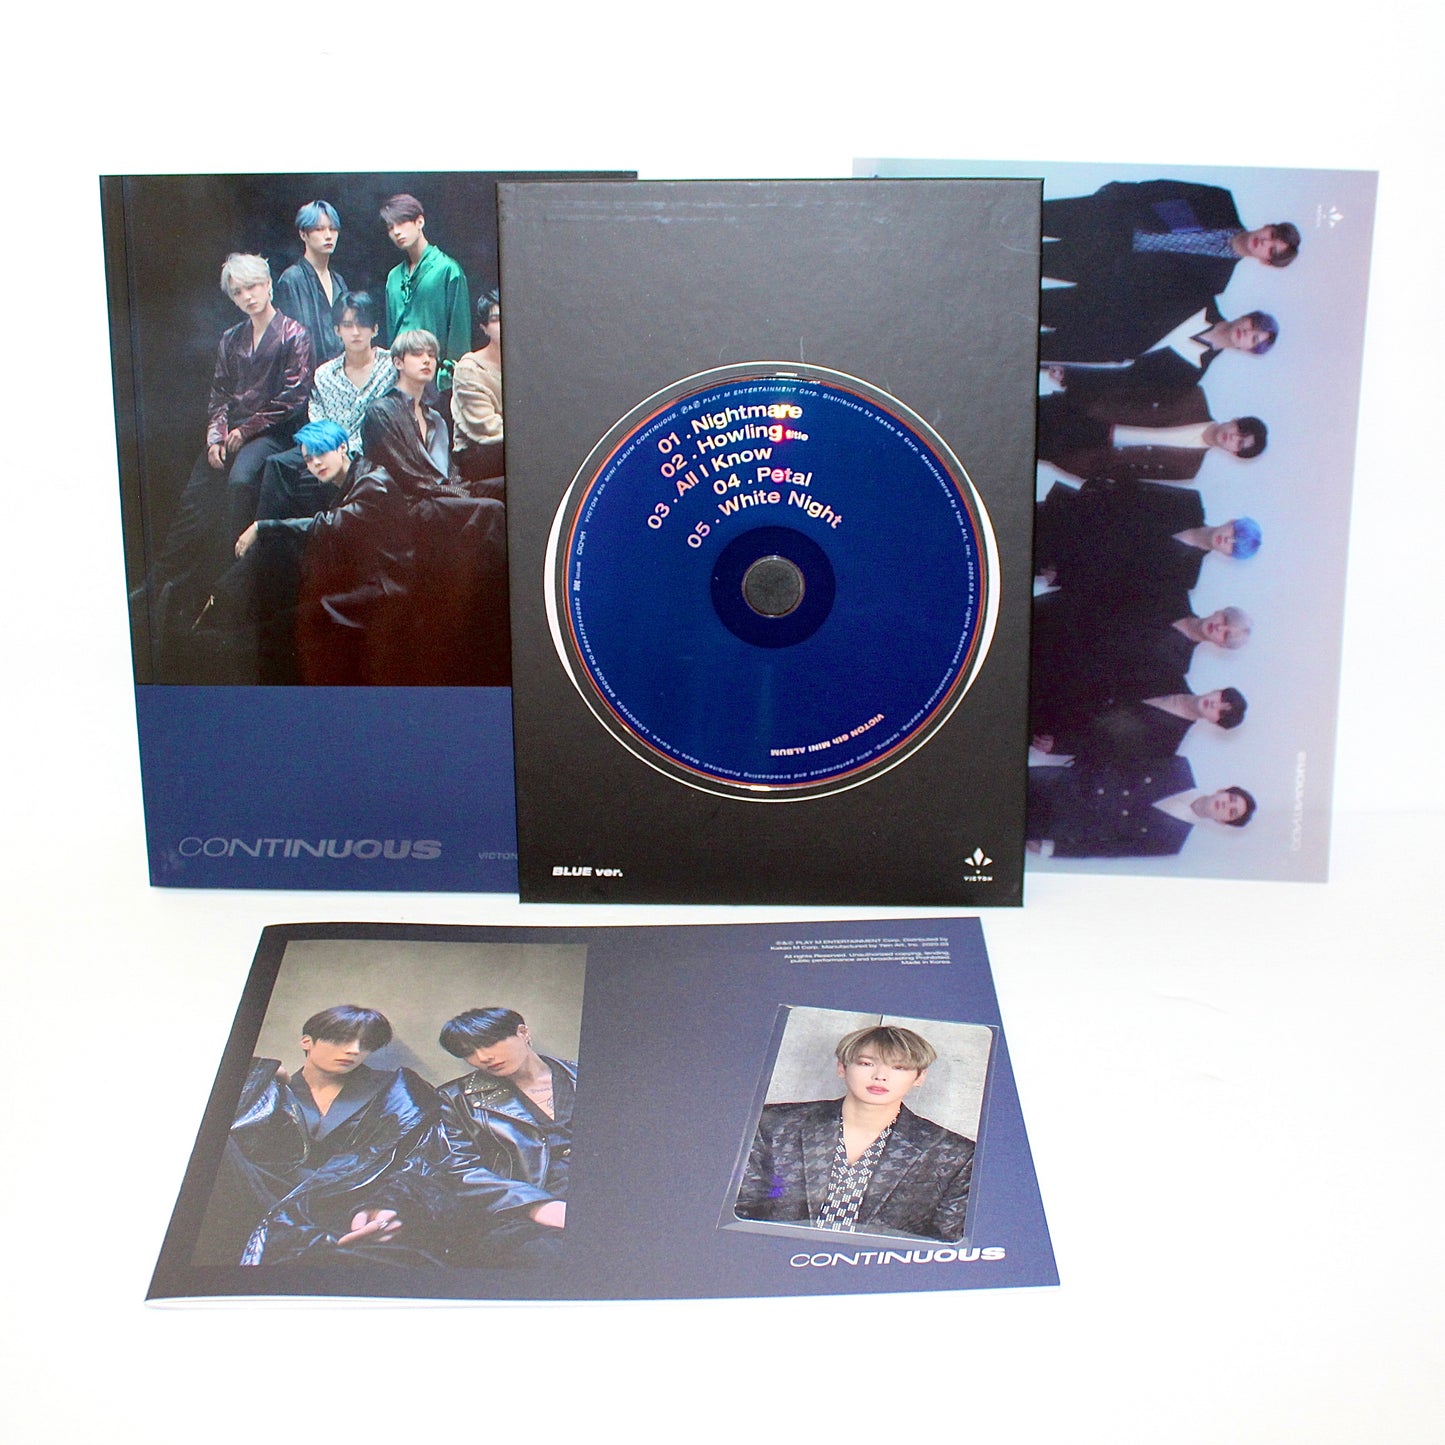 VICTON 6th Mini Album: Continuous | Blue Ver.